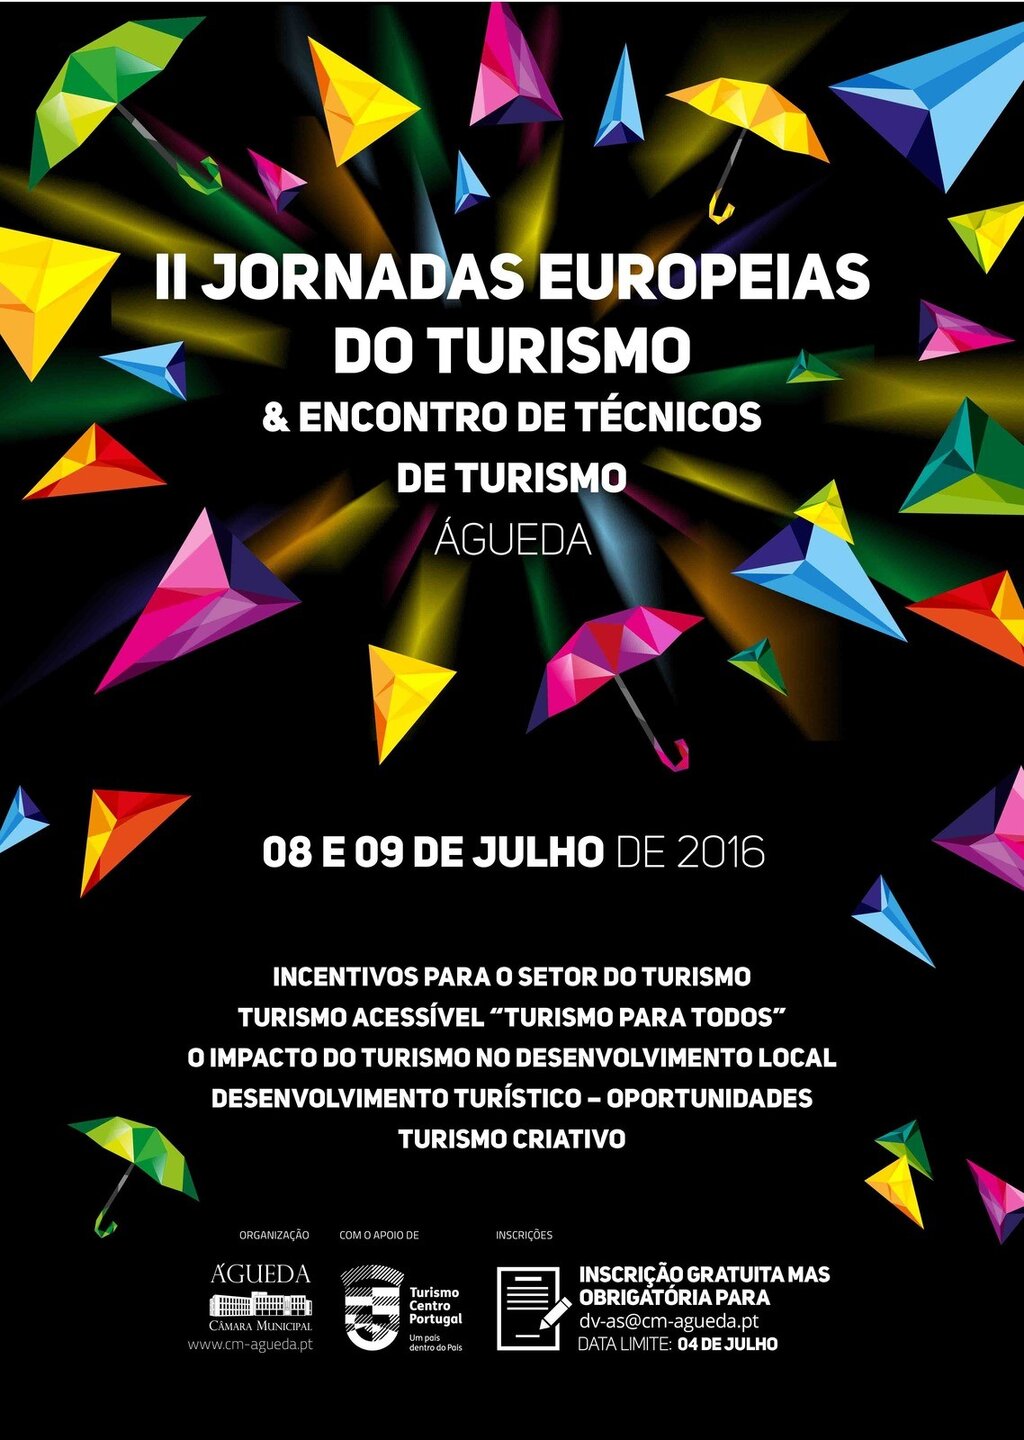 II Jornadas Europeias do Turismo & Encontro de Técnicos de Turismo